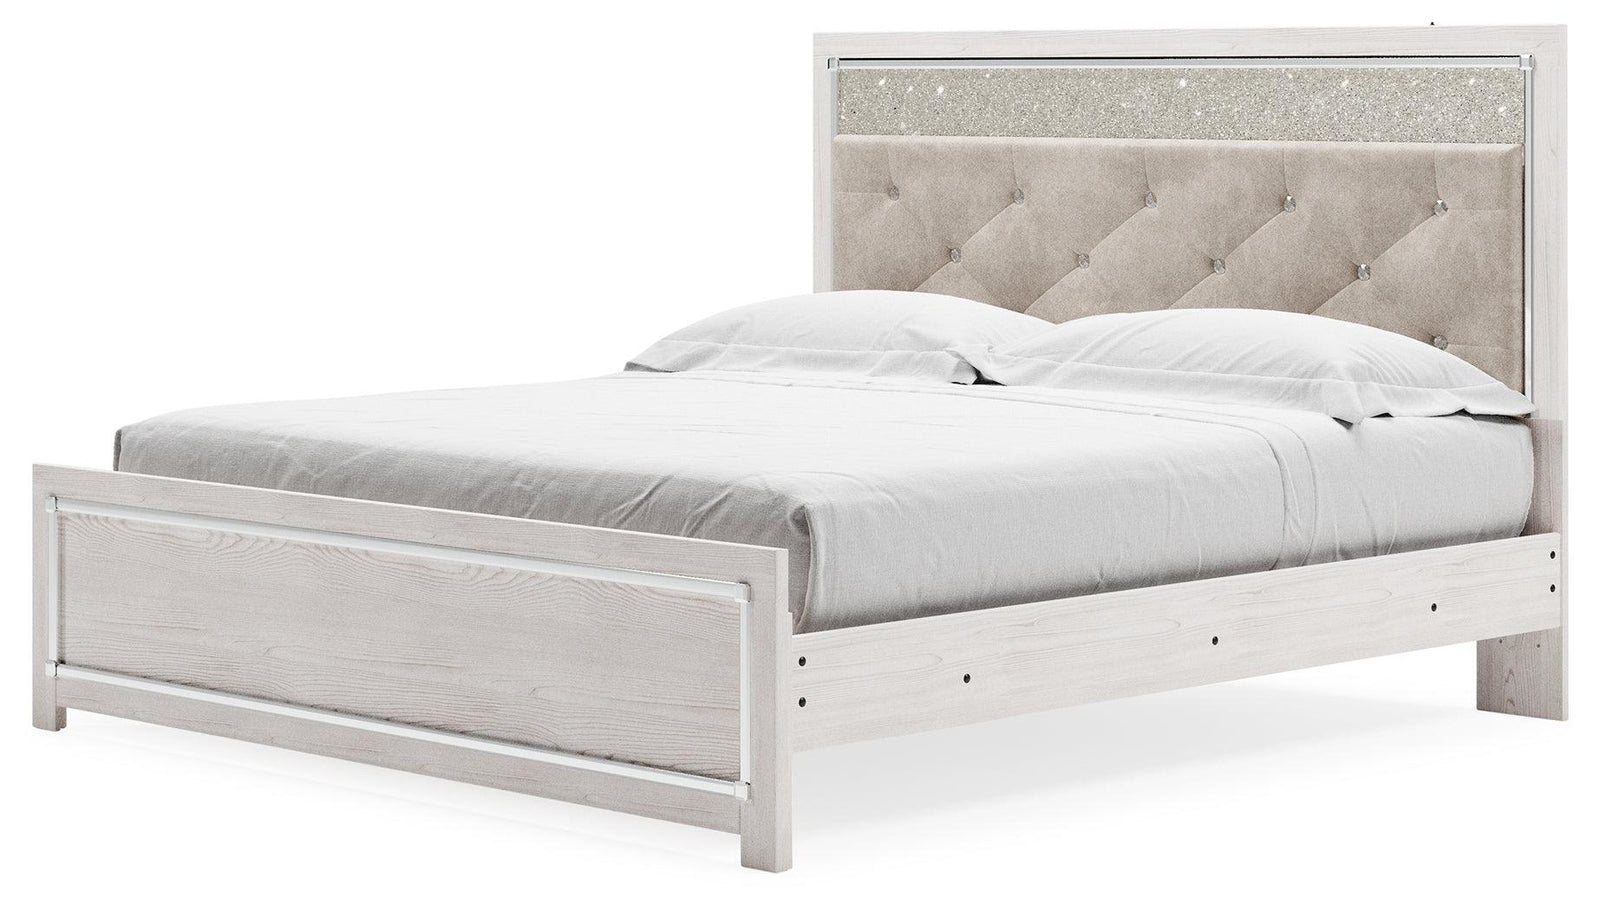 Altyra White King Panel Bed - Ella Furniture